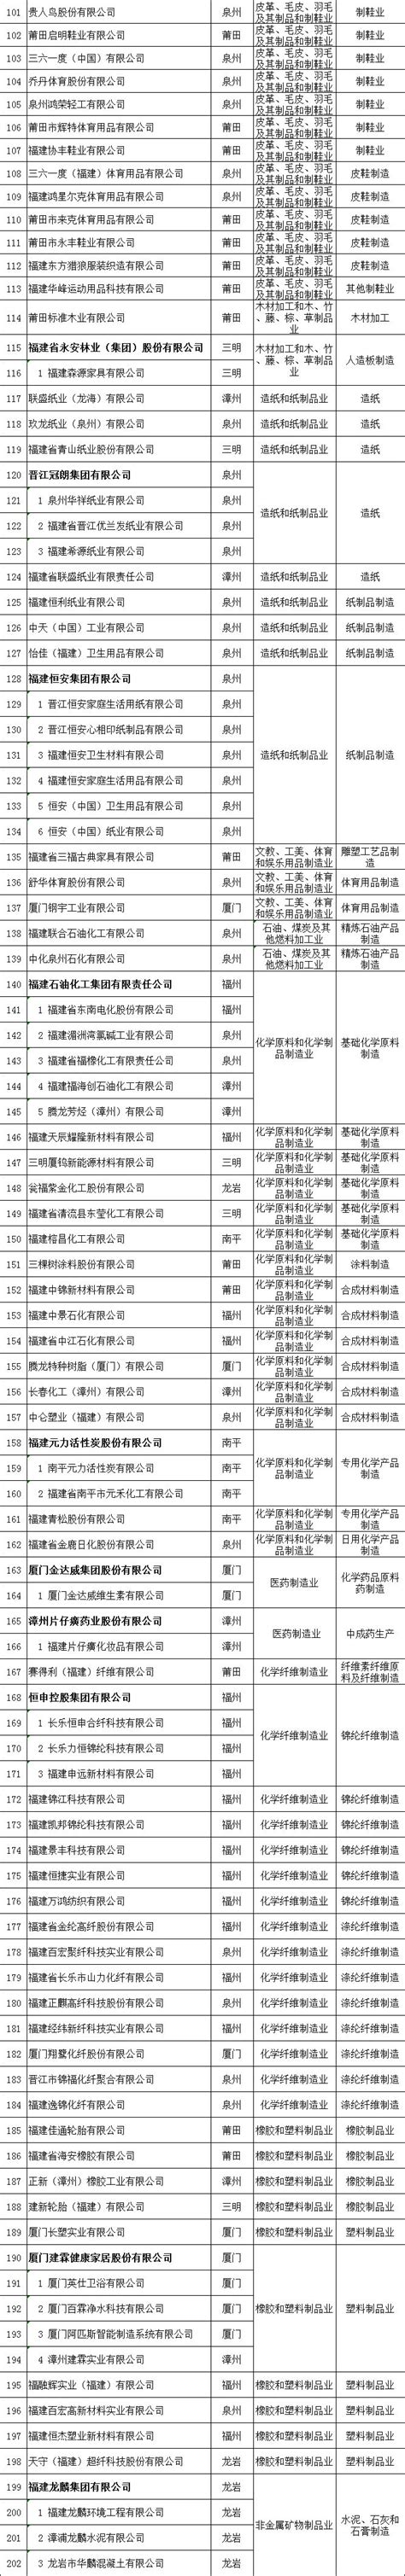 2019年福建省工业和信息化省级龙头企业名单正式公布